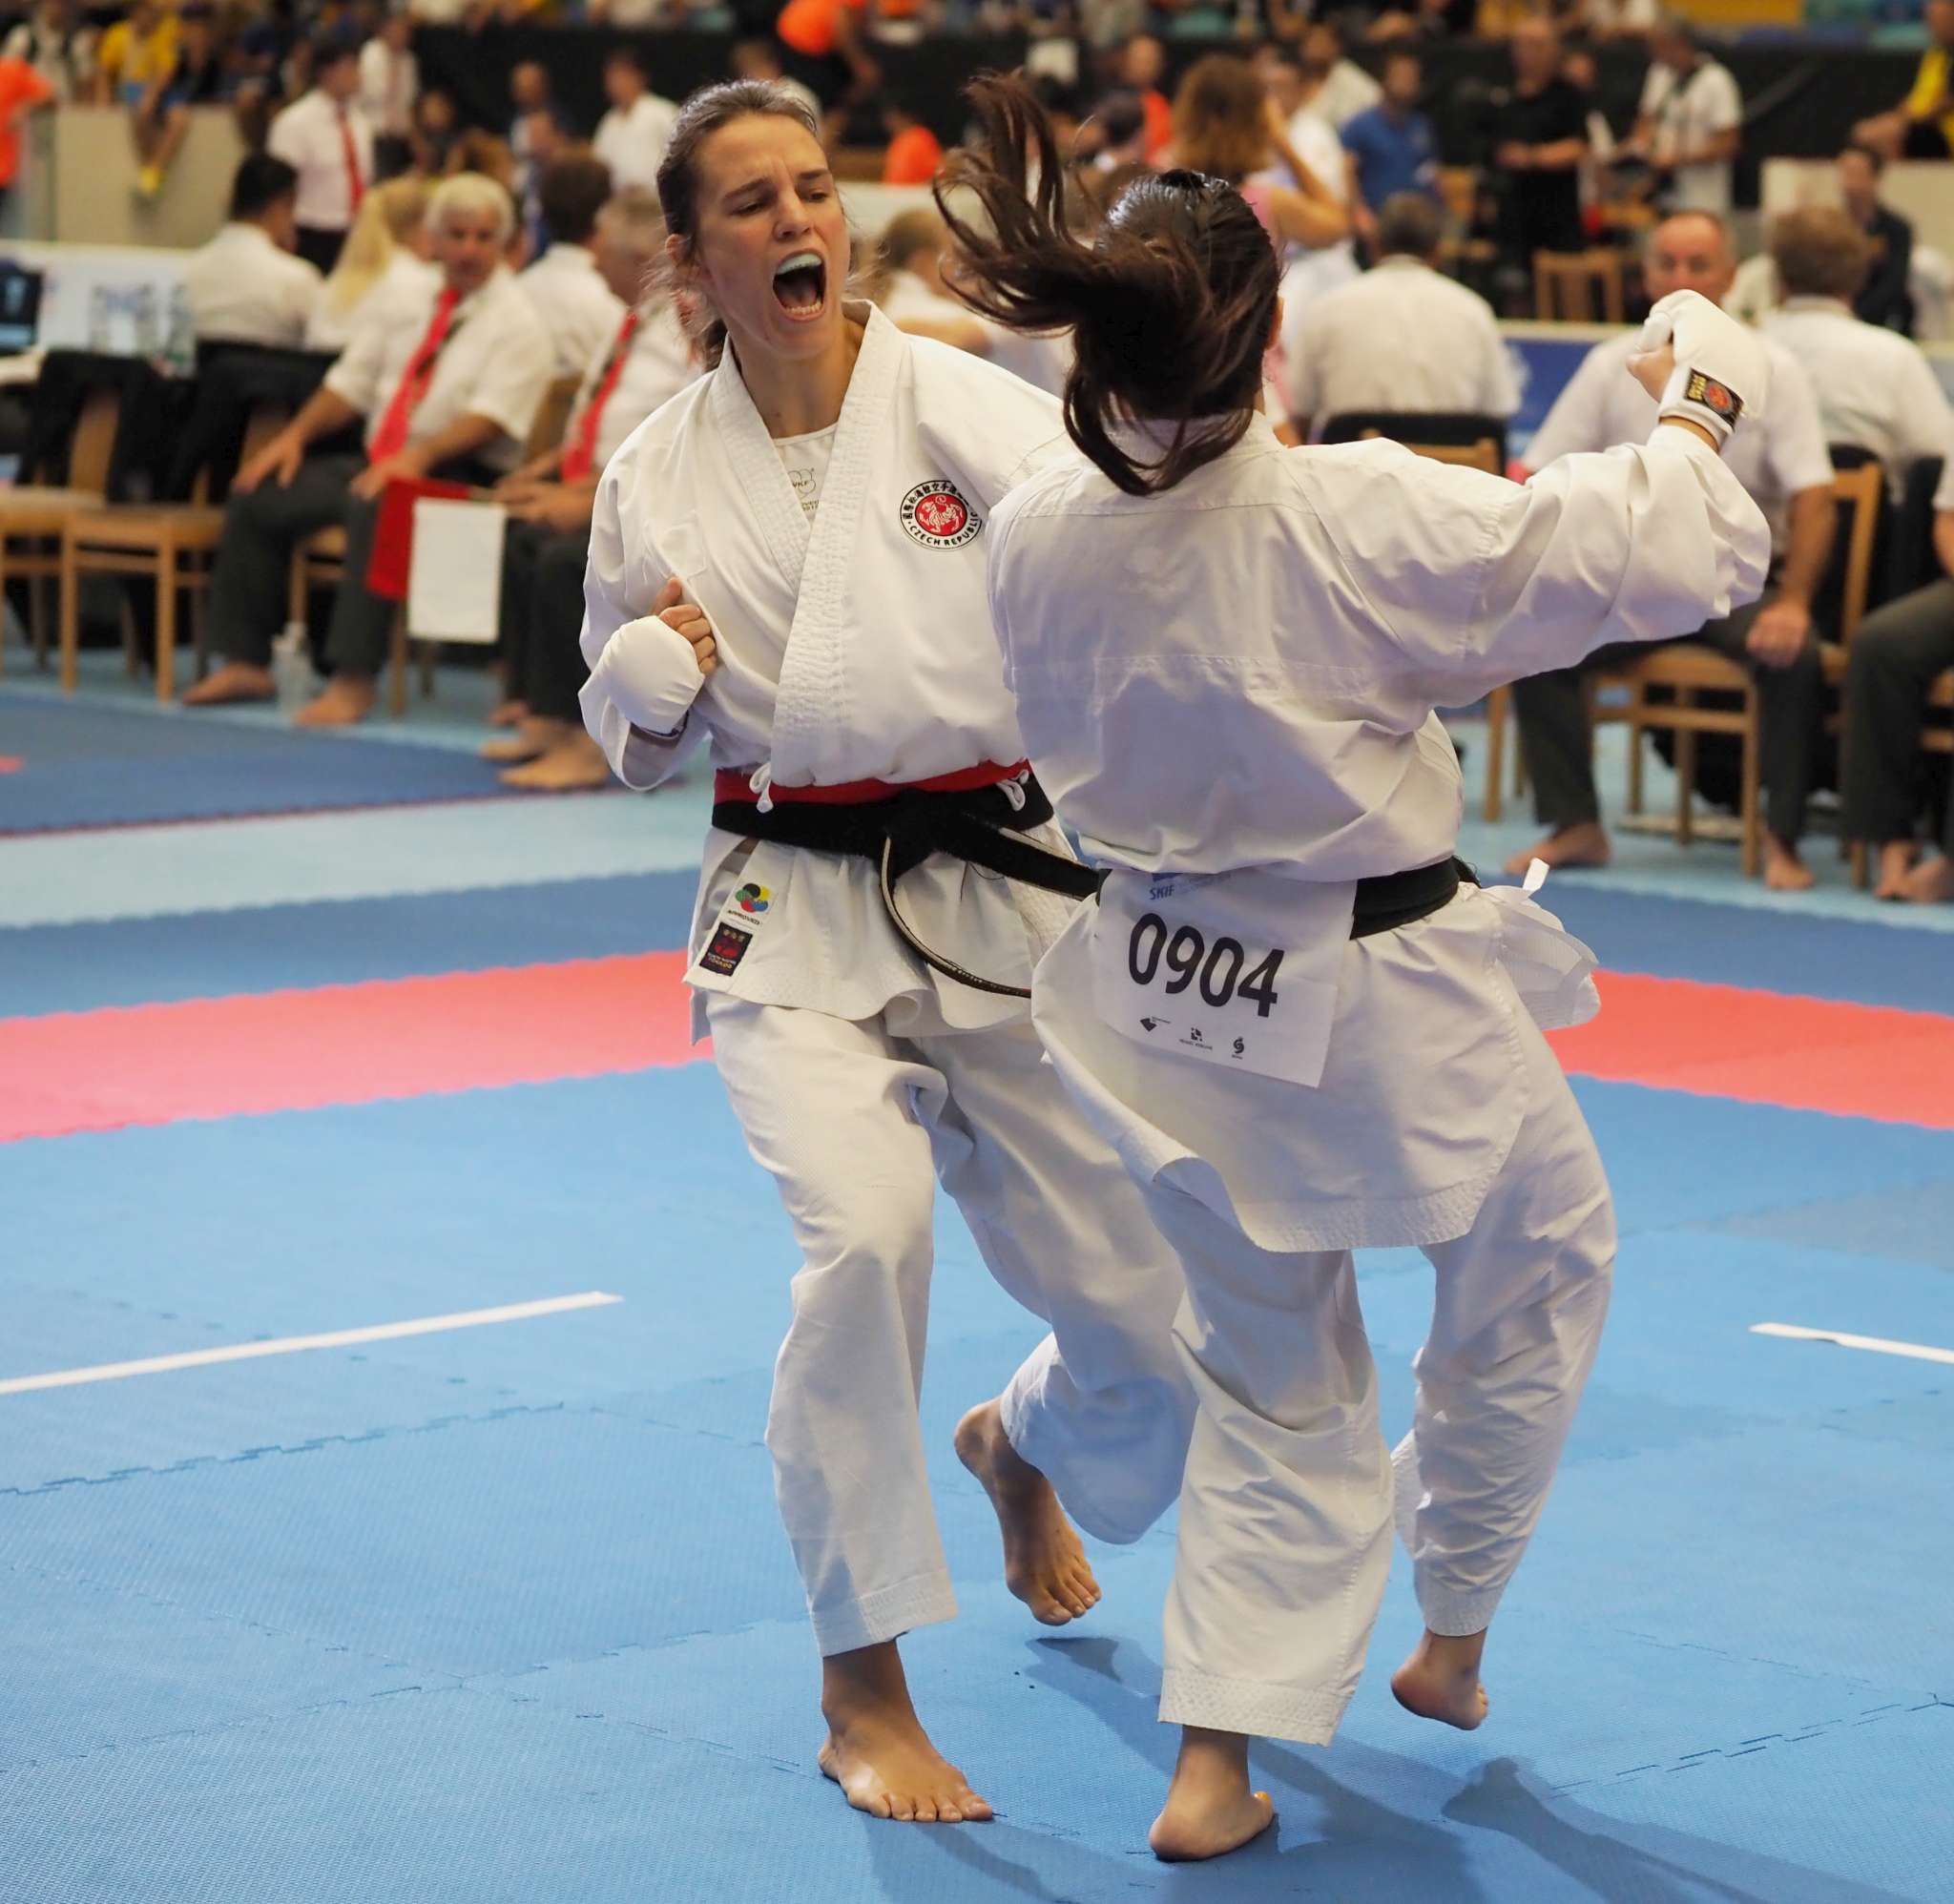 Rozhovor: Sport je zdraví a radost. Mistryně světa v karate Radka Tesařová navrhuje medaile pro vítěze.